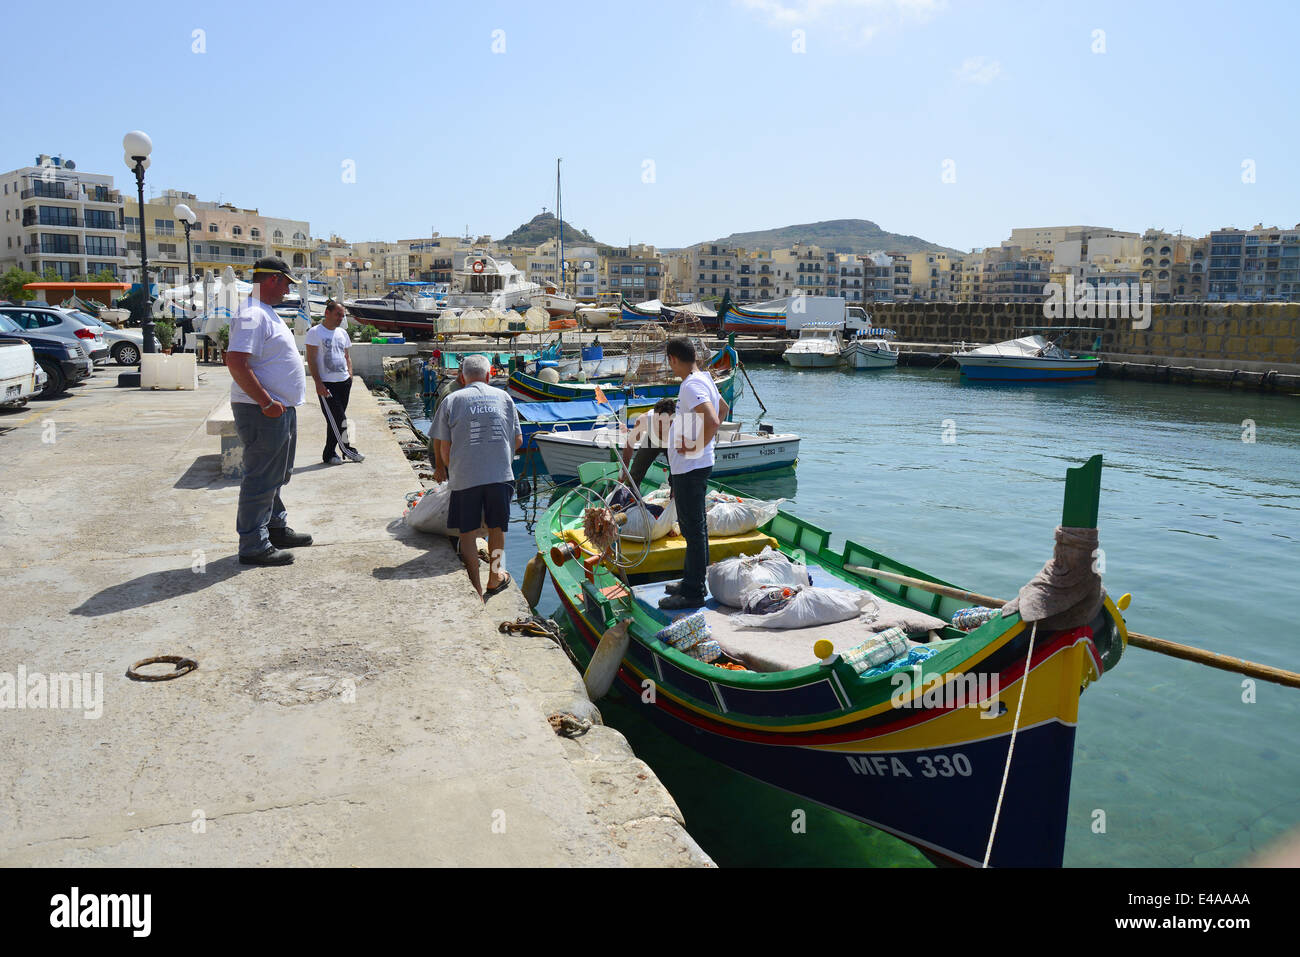 Les pêcheurs de luzzu boat, Marsalforn, Gozo (Għawdex), Comino et Gozo Gozo District, Région, République de Malte Banque D'Images